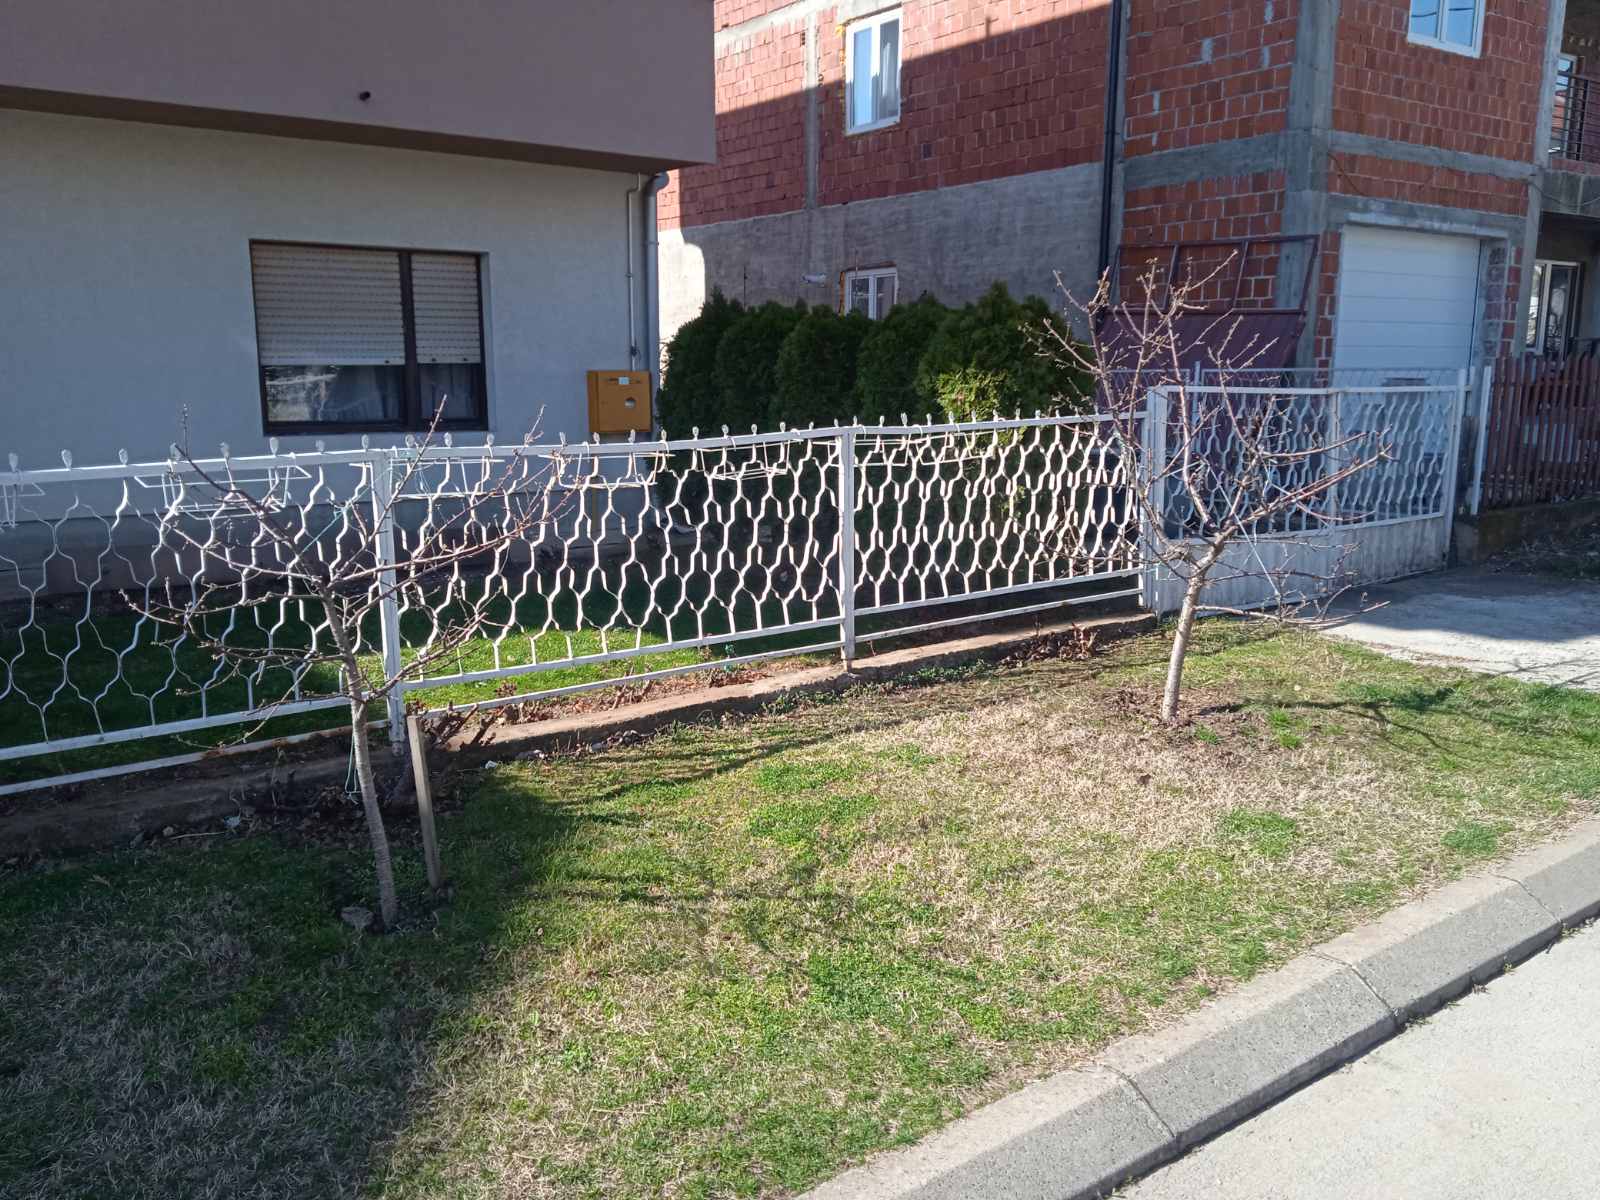 Prodajem metalnu ogradu u Nišu